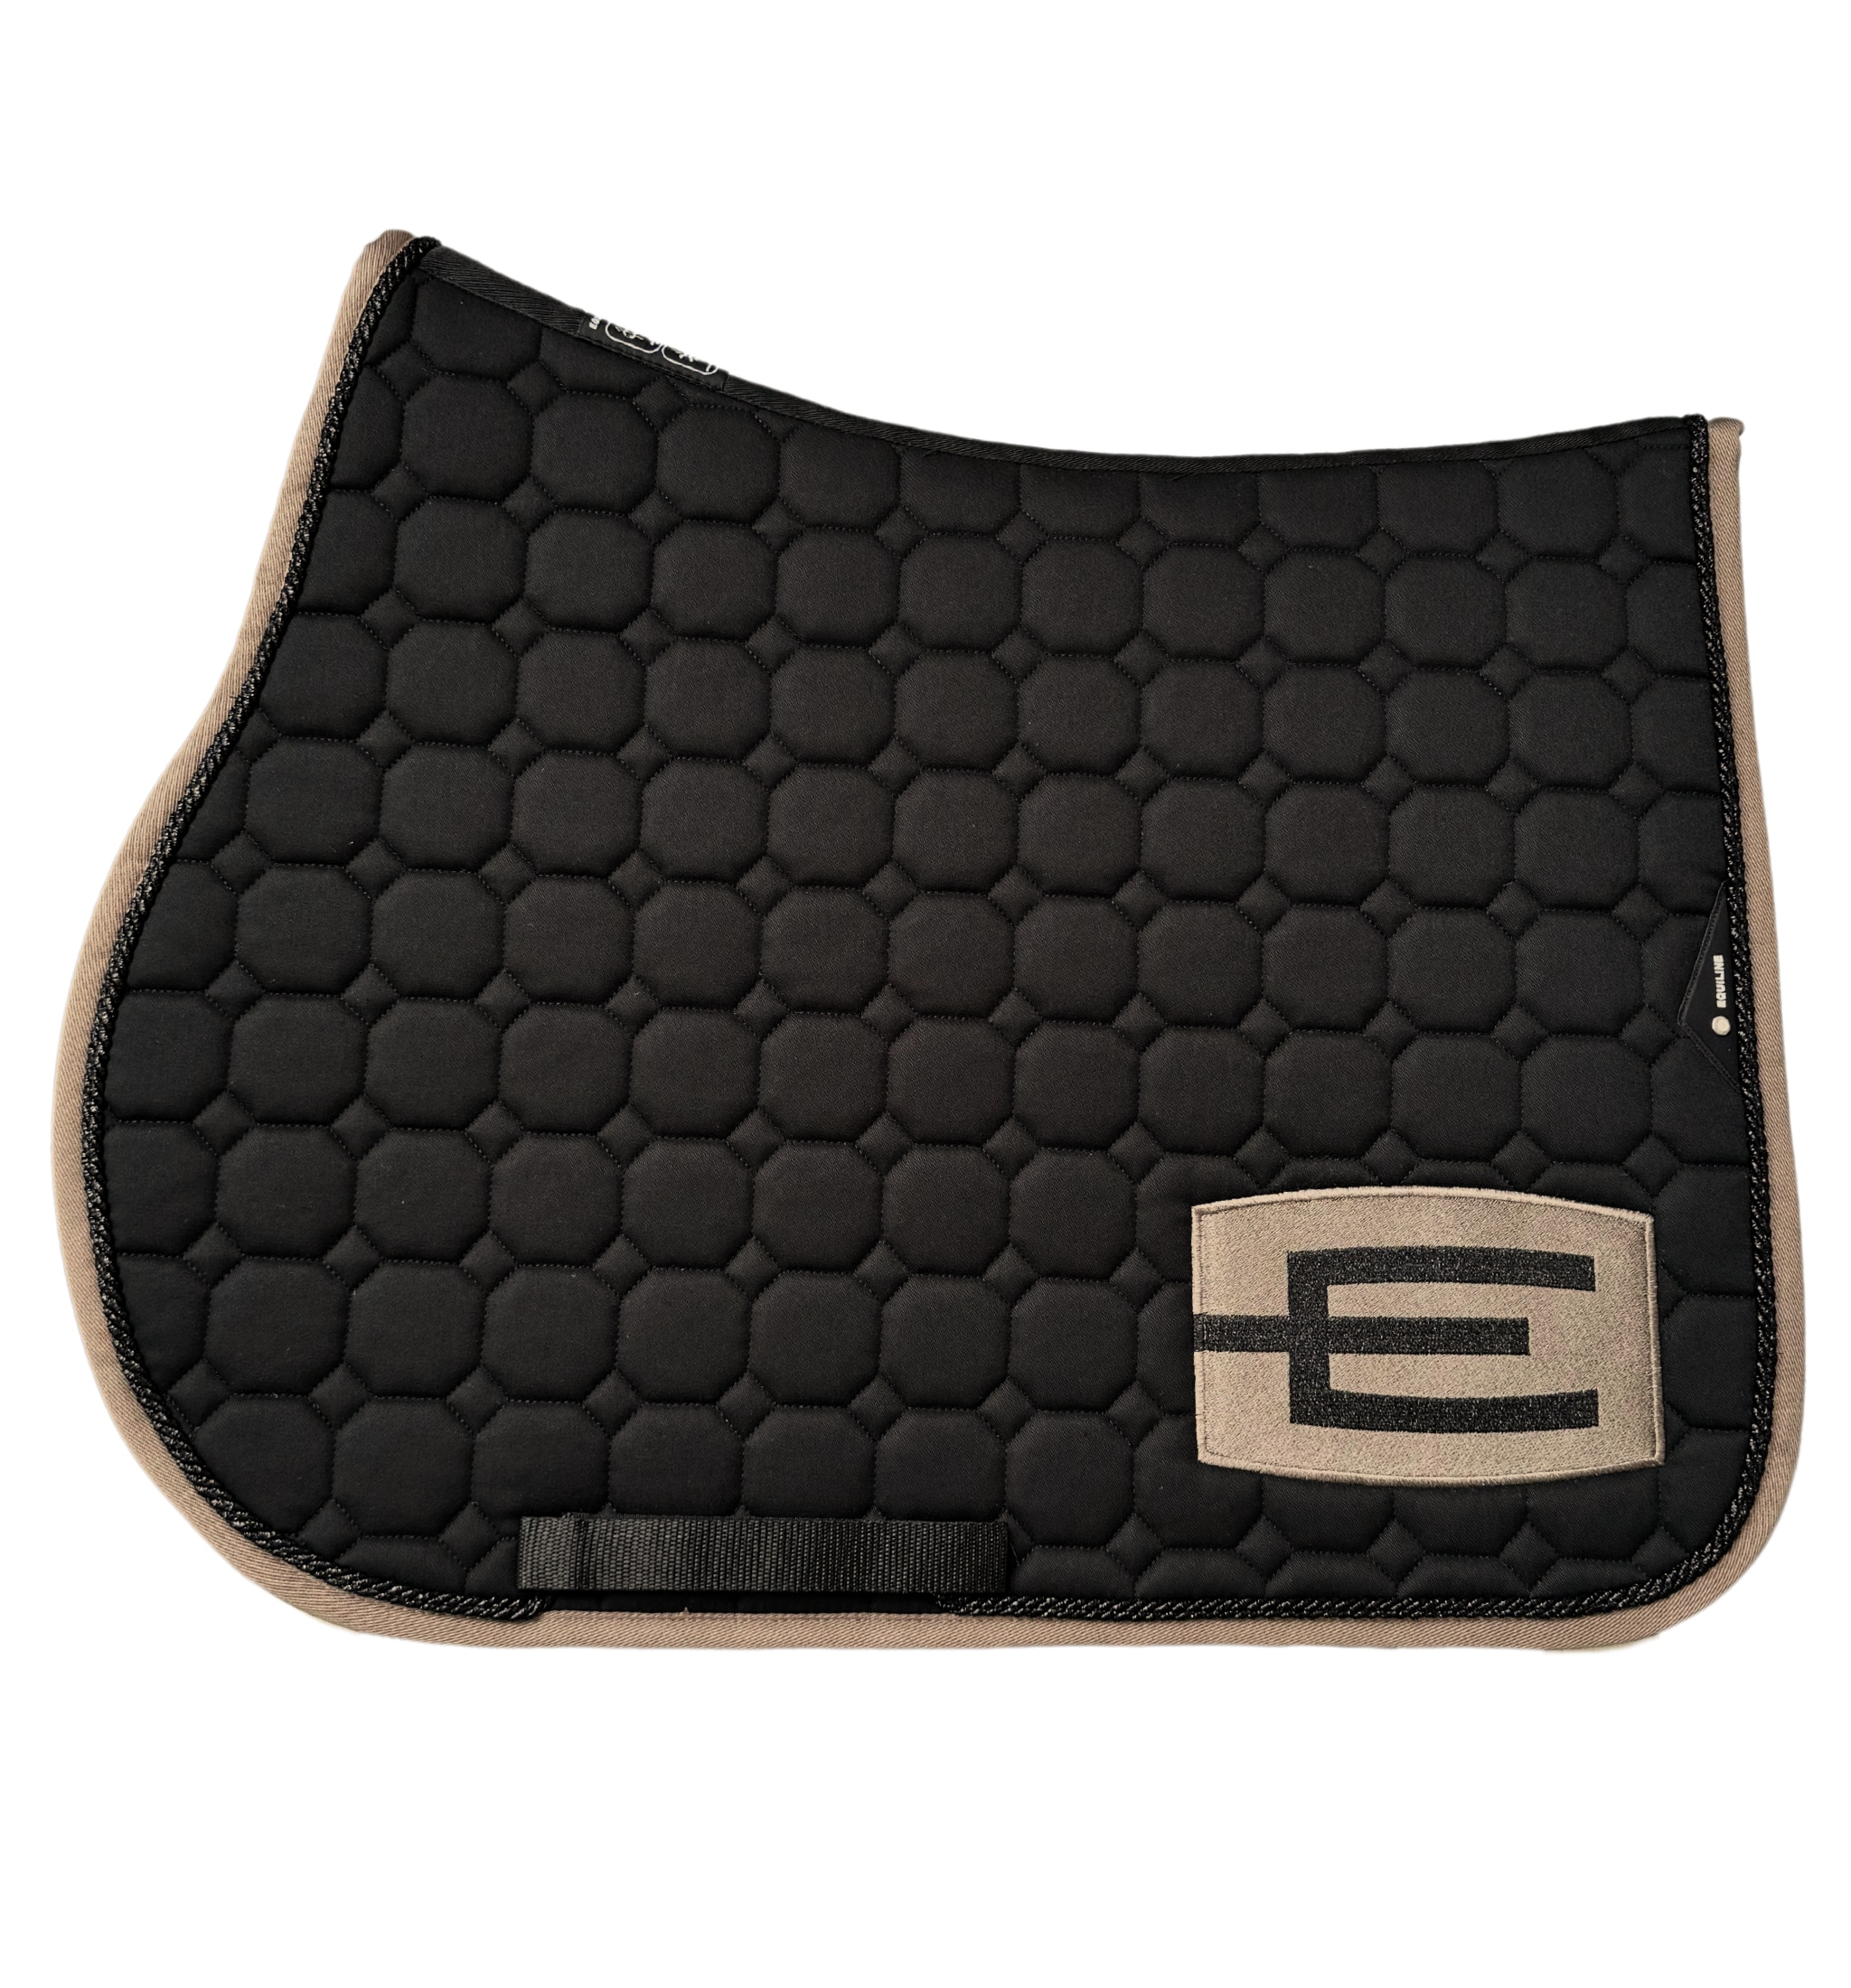 Jumping Saddle Pad G E-logo - Black/Capp